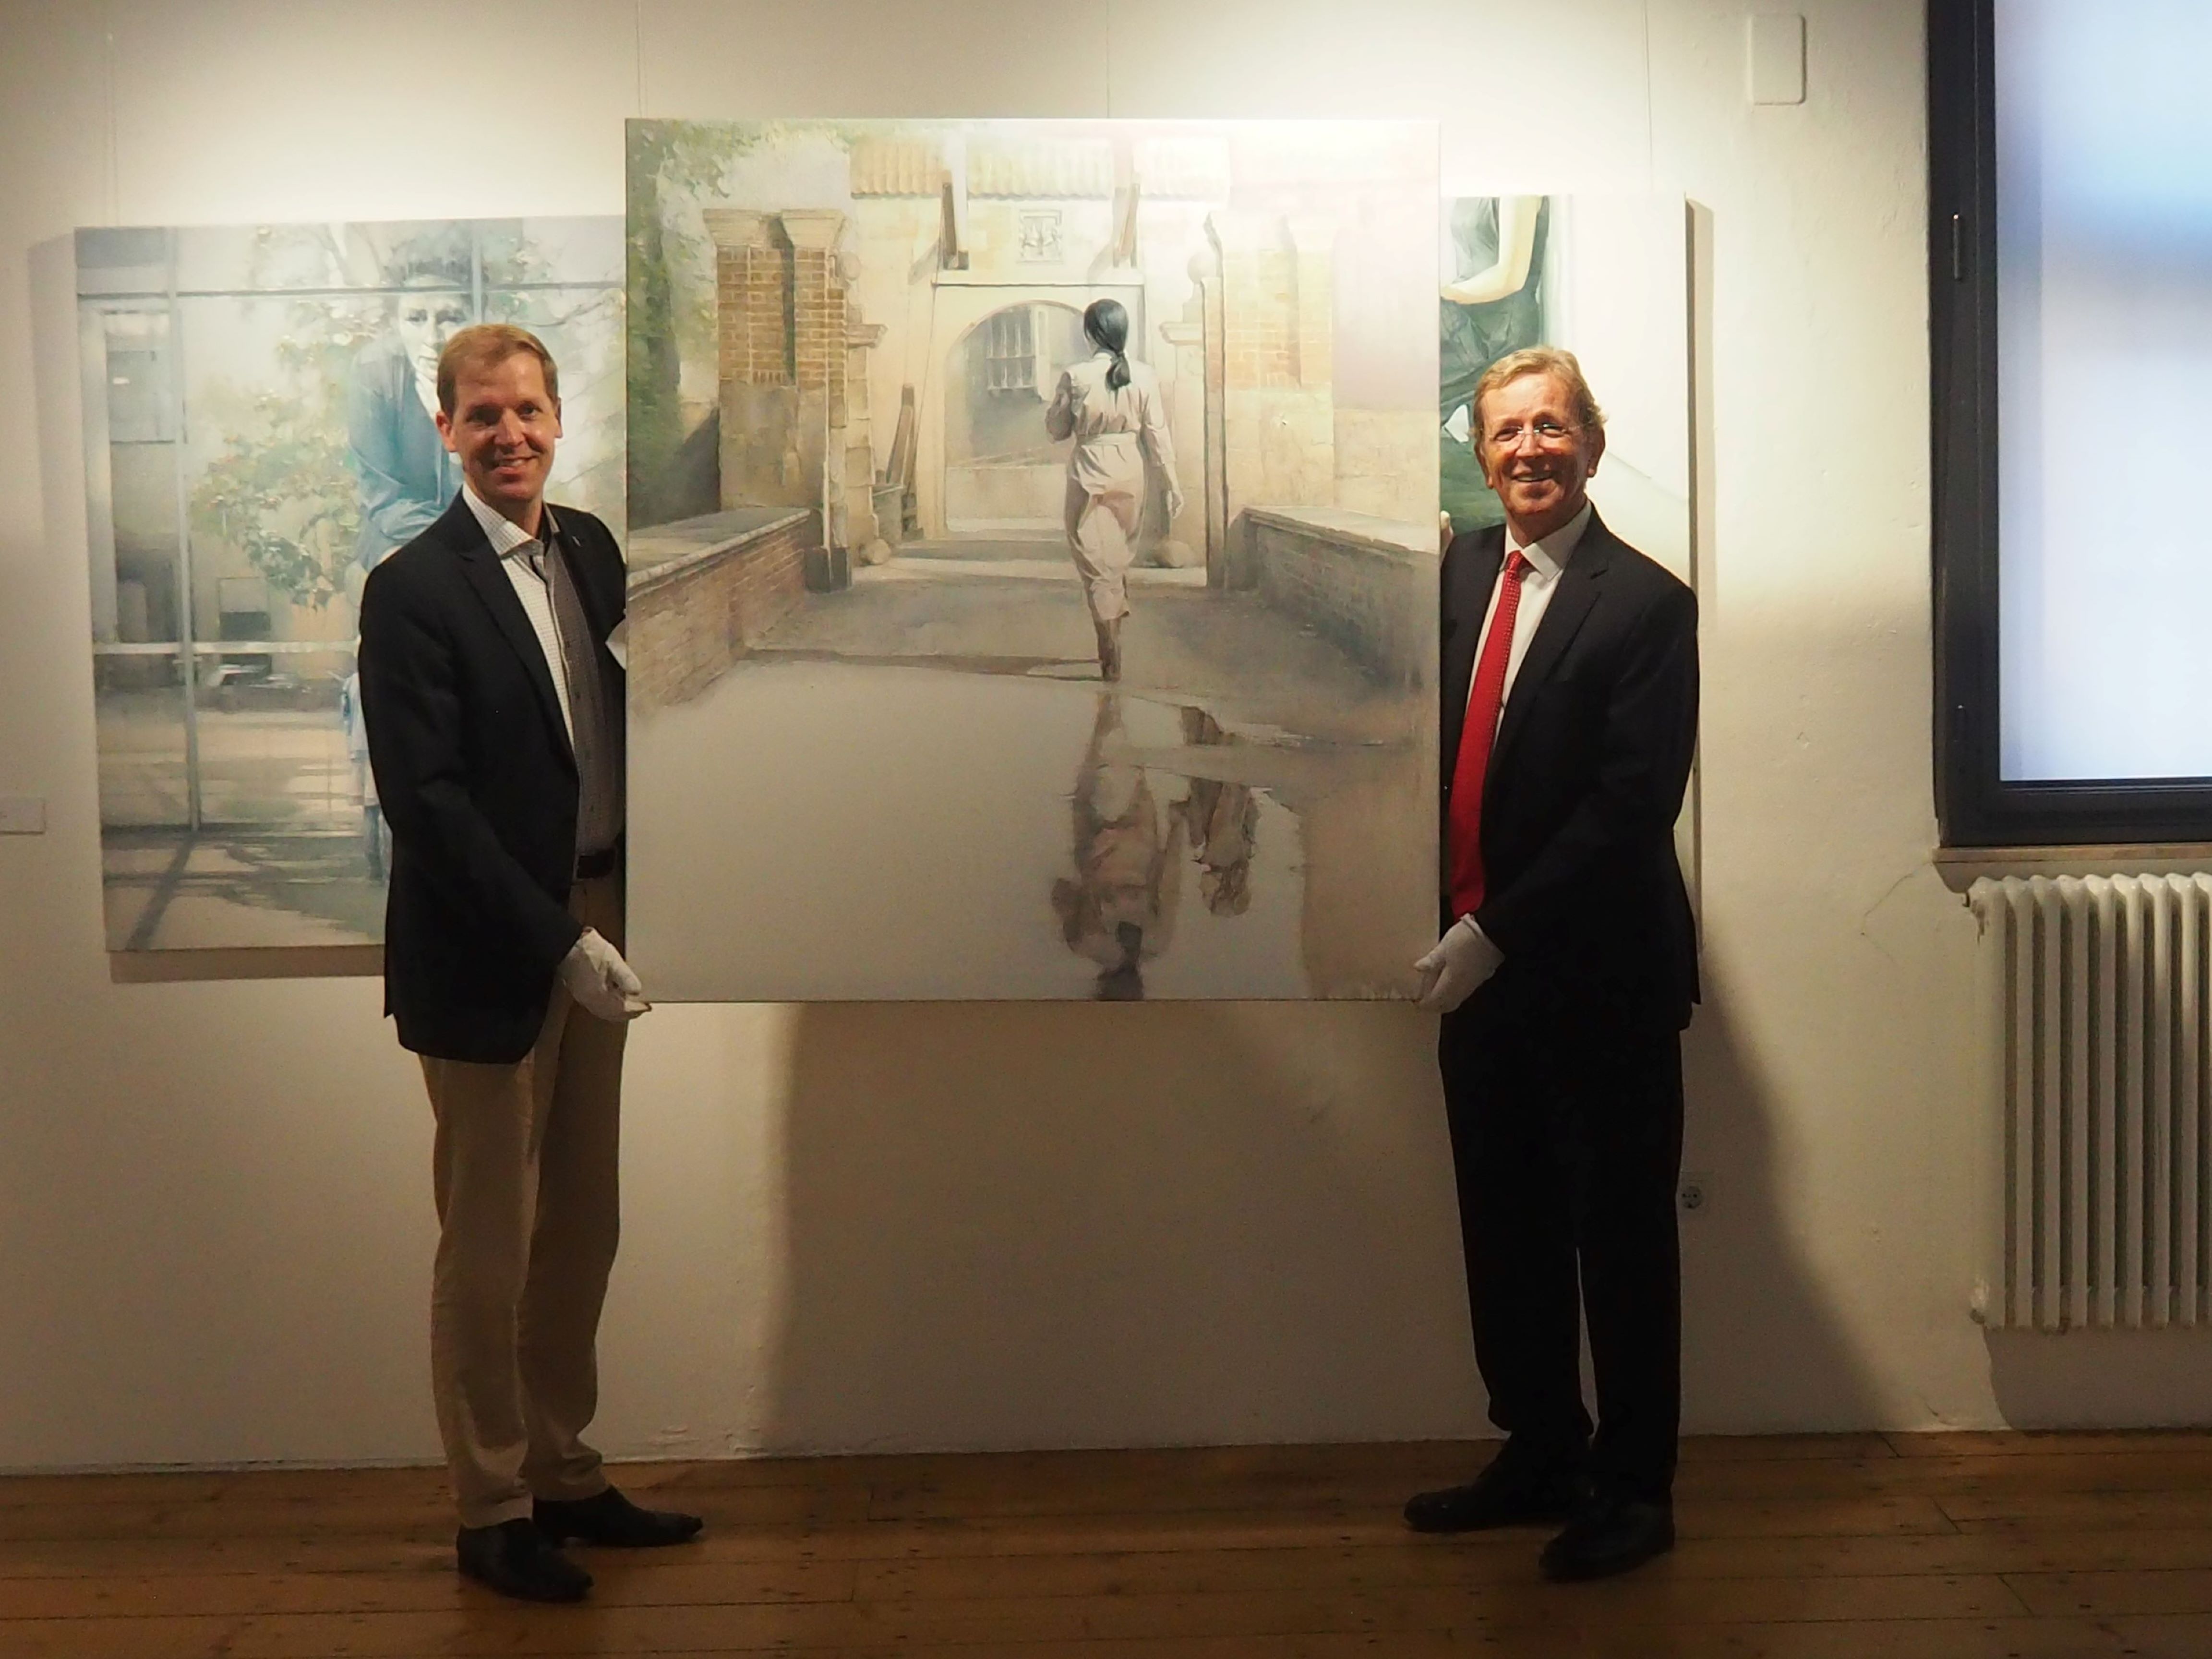 Landrat Dr. Christian Schulze Pellengahr (links) und Stiftungsvorsitzender Heinrich-Georg Krumme mit dem Gemälde (Bildquelle: Kreis Coesfeld)